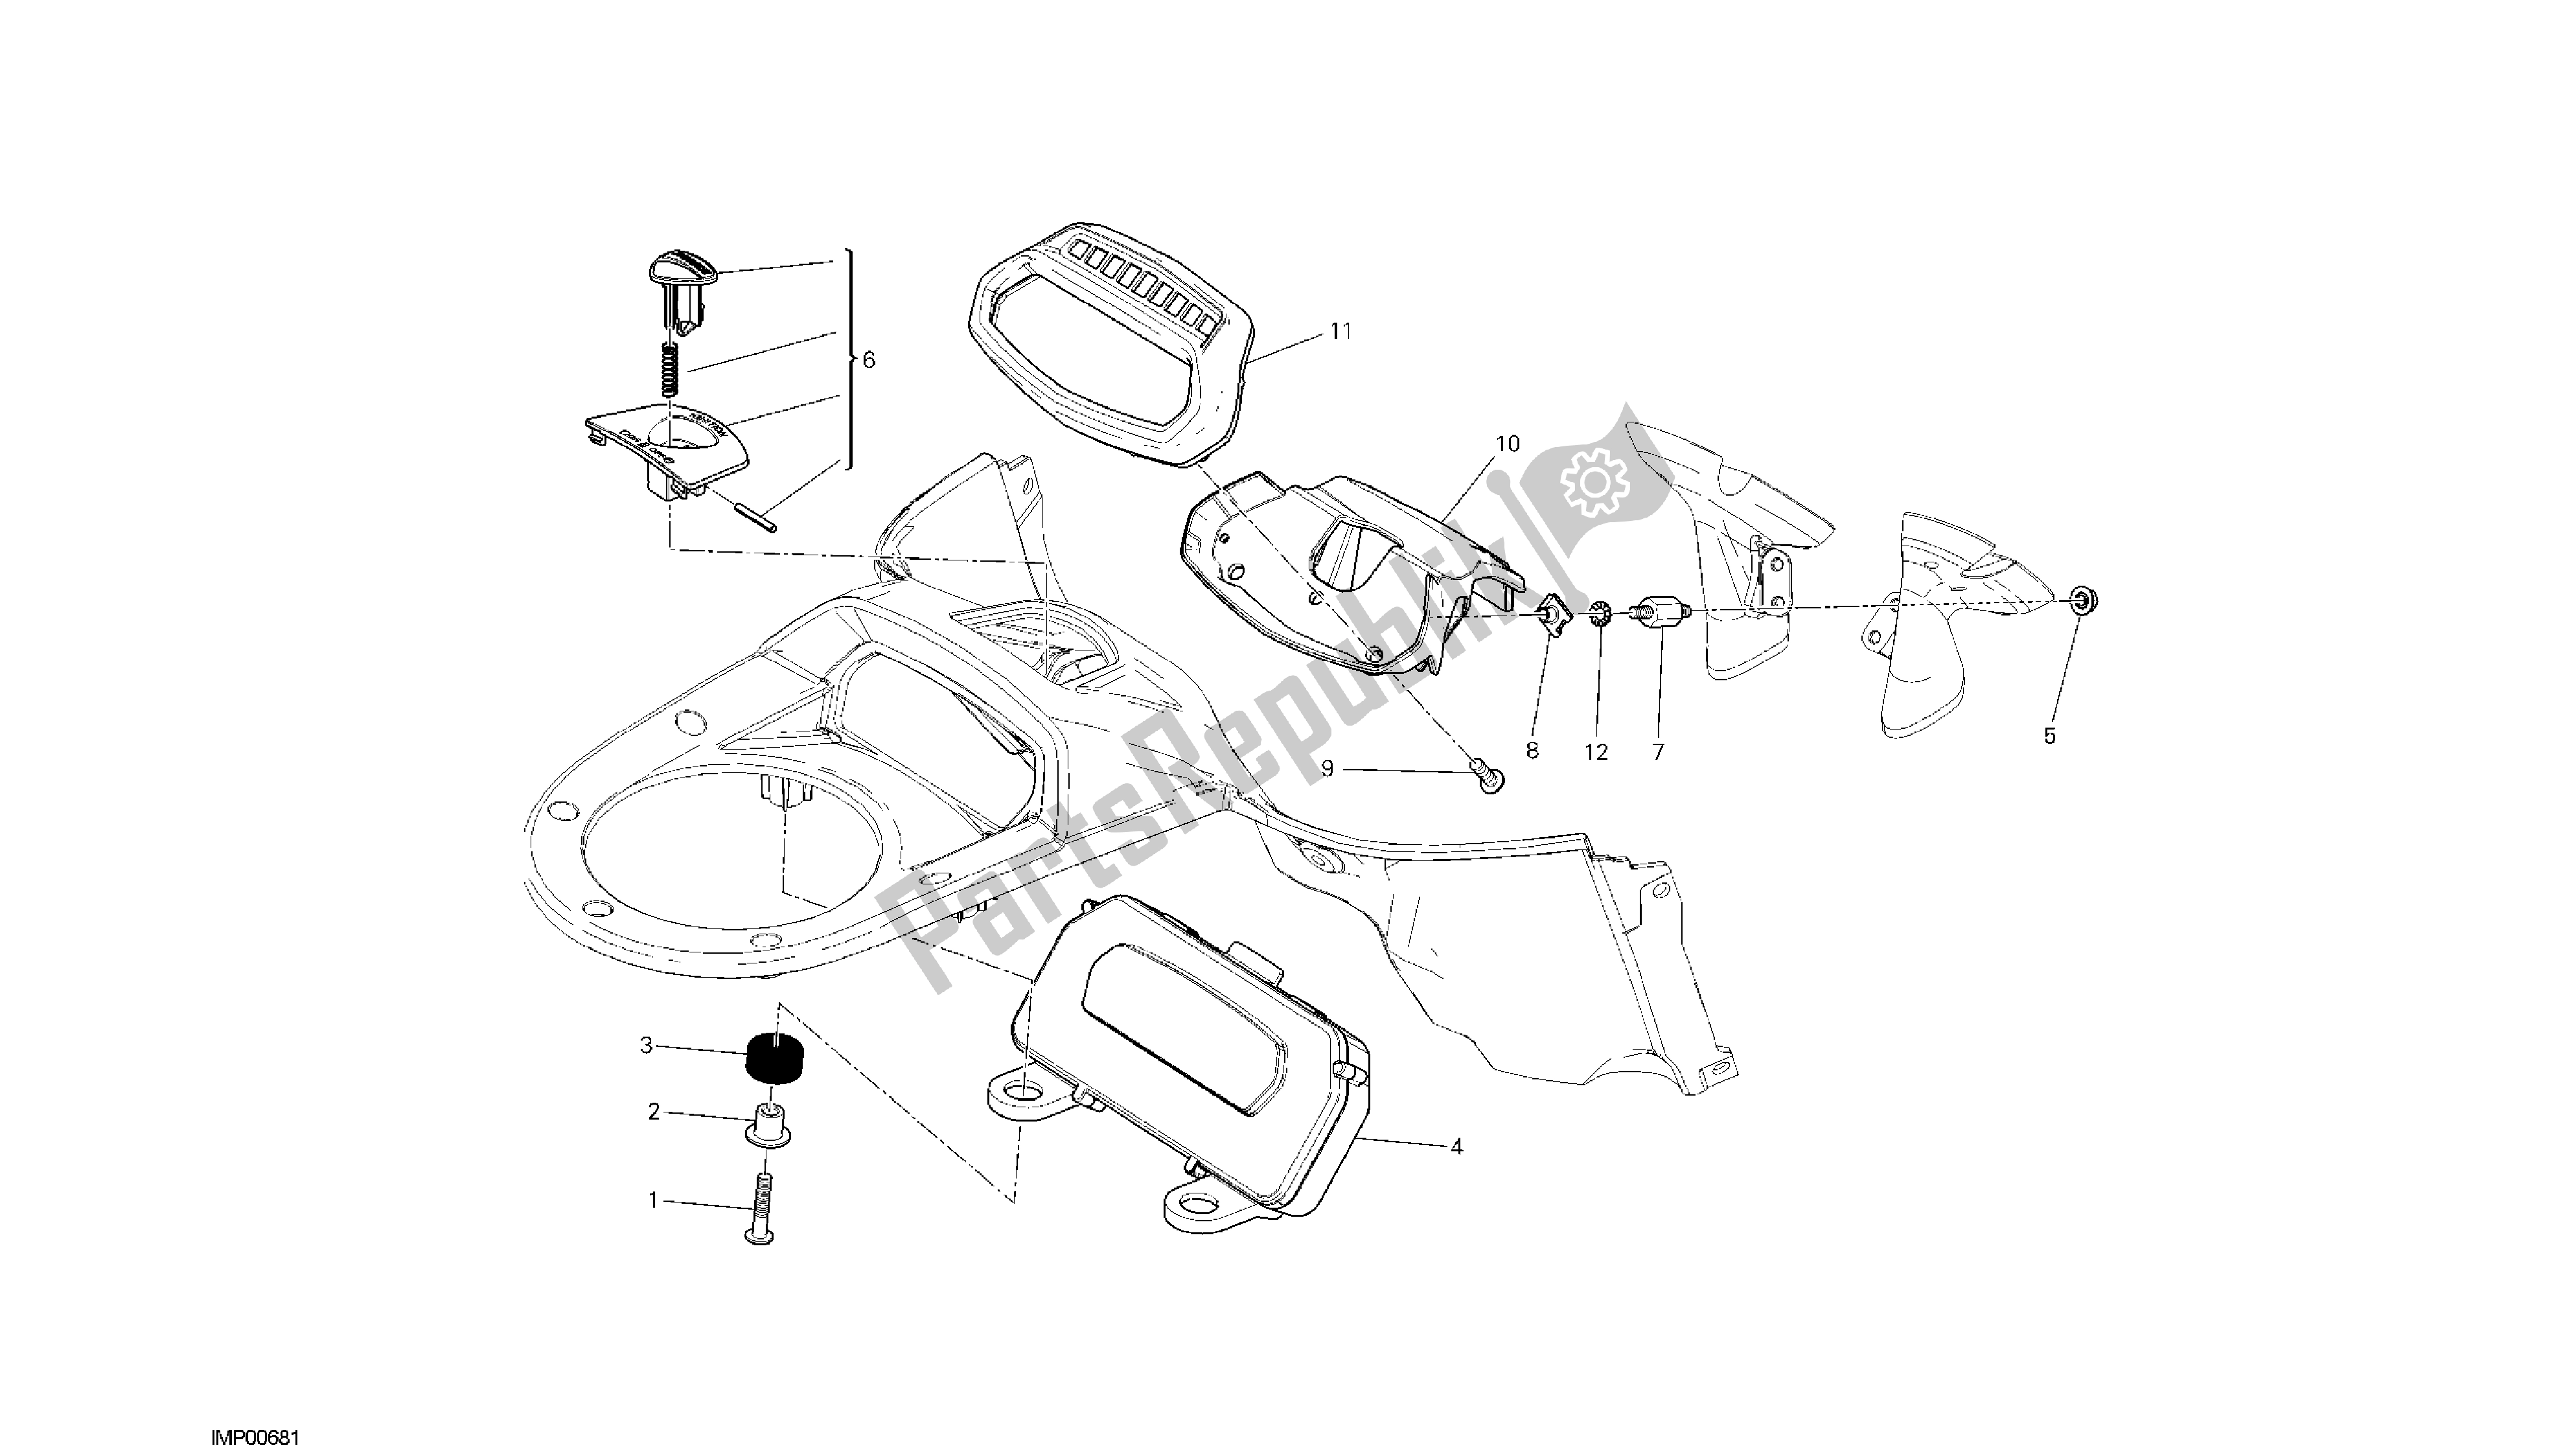 Todas las partes para Dibujo 20a - Panel De Instrumentos [mod: Dvlt; Xst: Aus, Eu R, Fr A, J Ap] Grupo Fr Ame de Ducati Diavel Strada 1200 2013